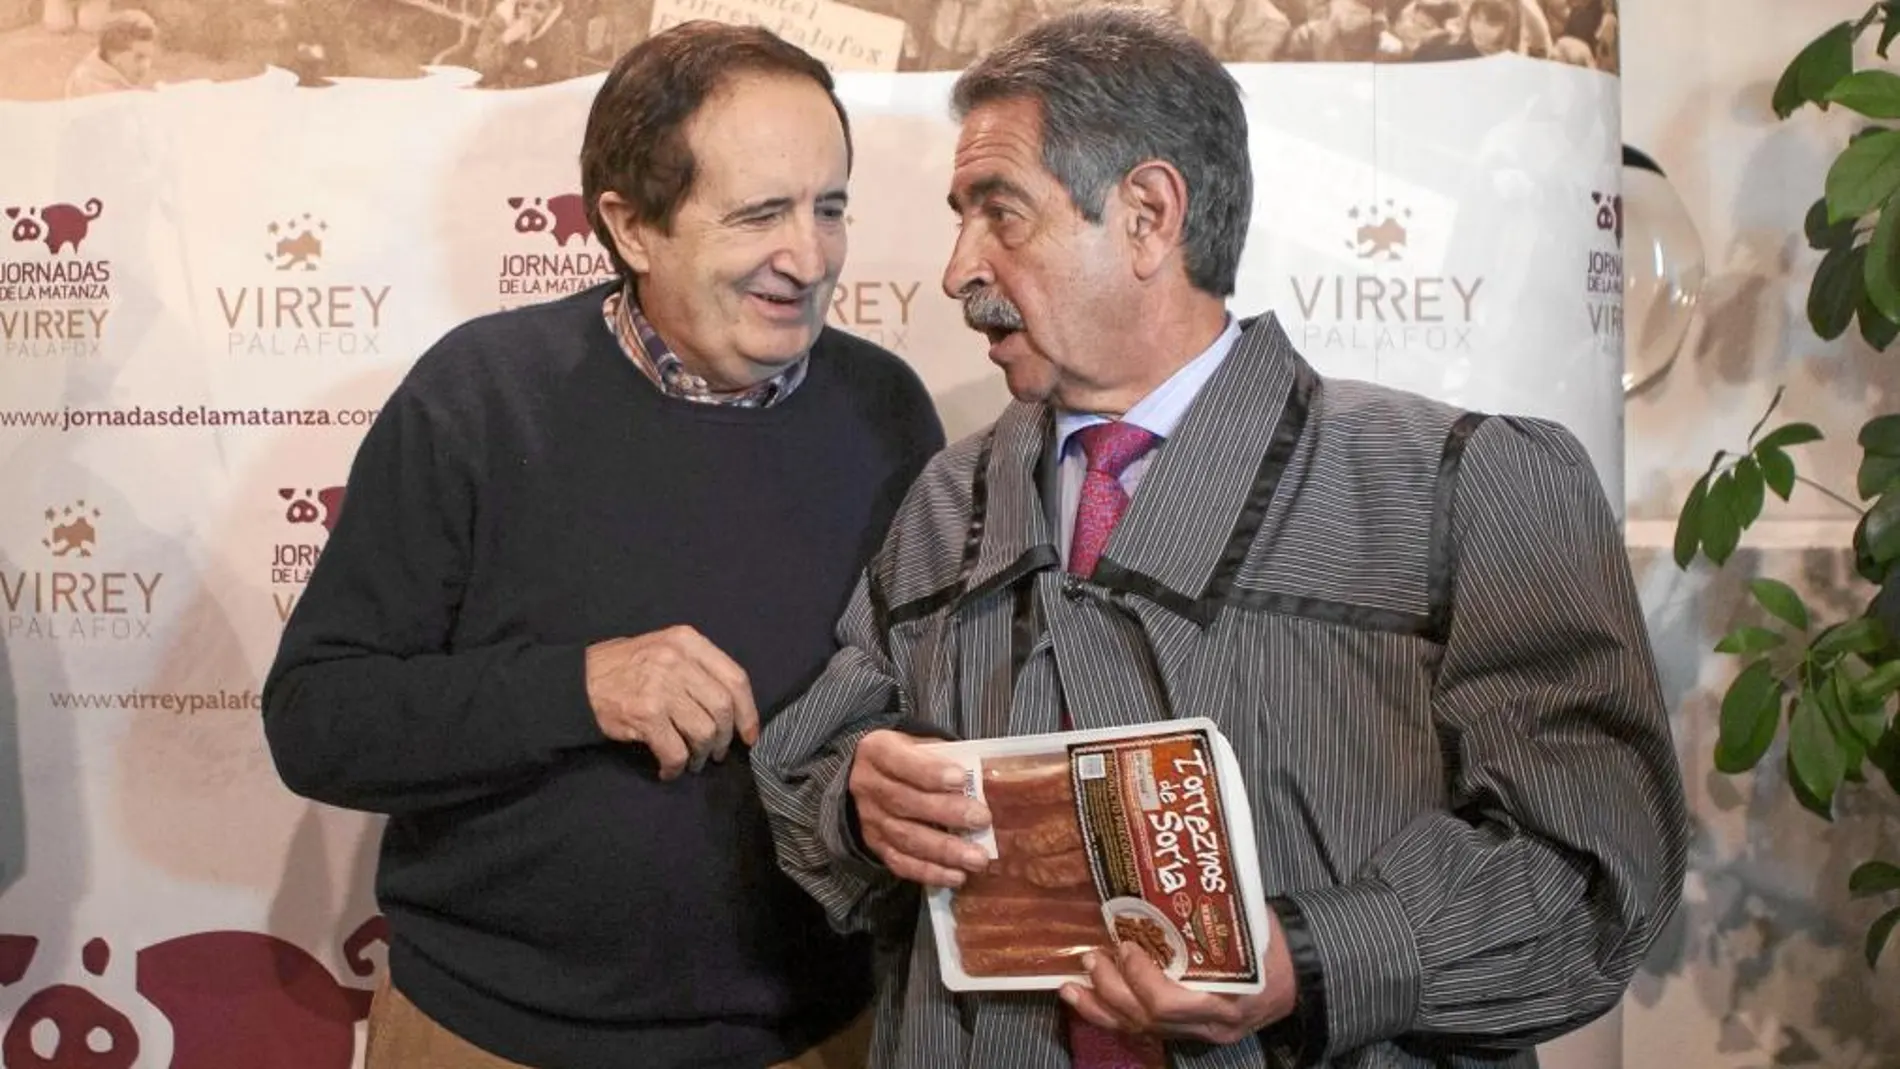 El vicepresidente del Senado, Juan José Lucas, conversa con el expresidente de Cantabria, Miguel Ángel Revilla durante el acto celebrado en el Virrey Palafox